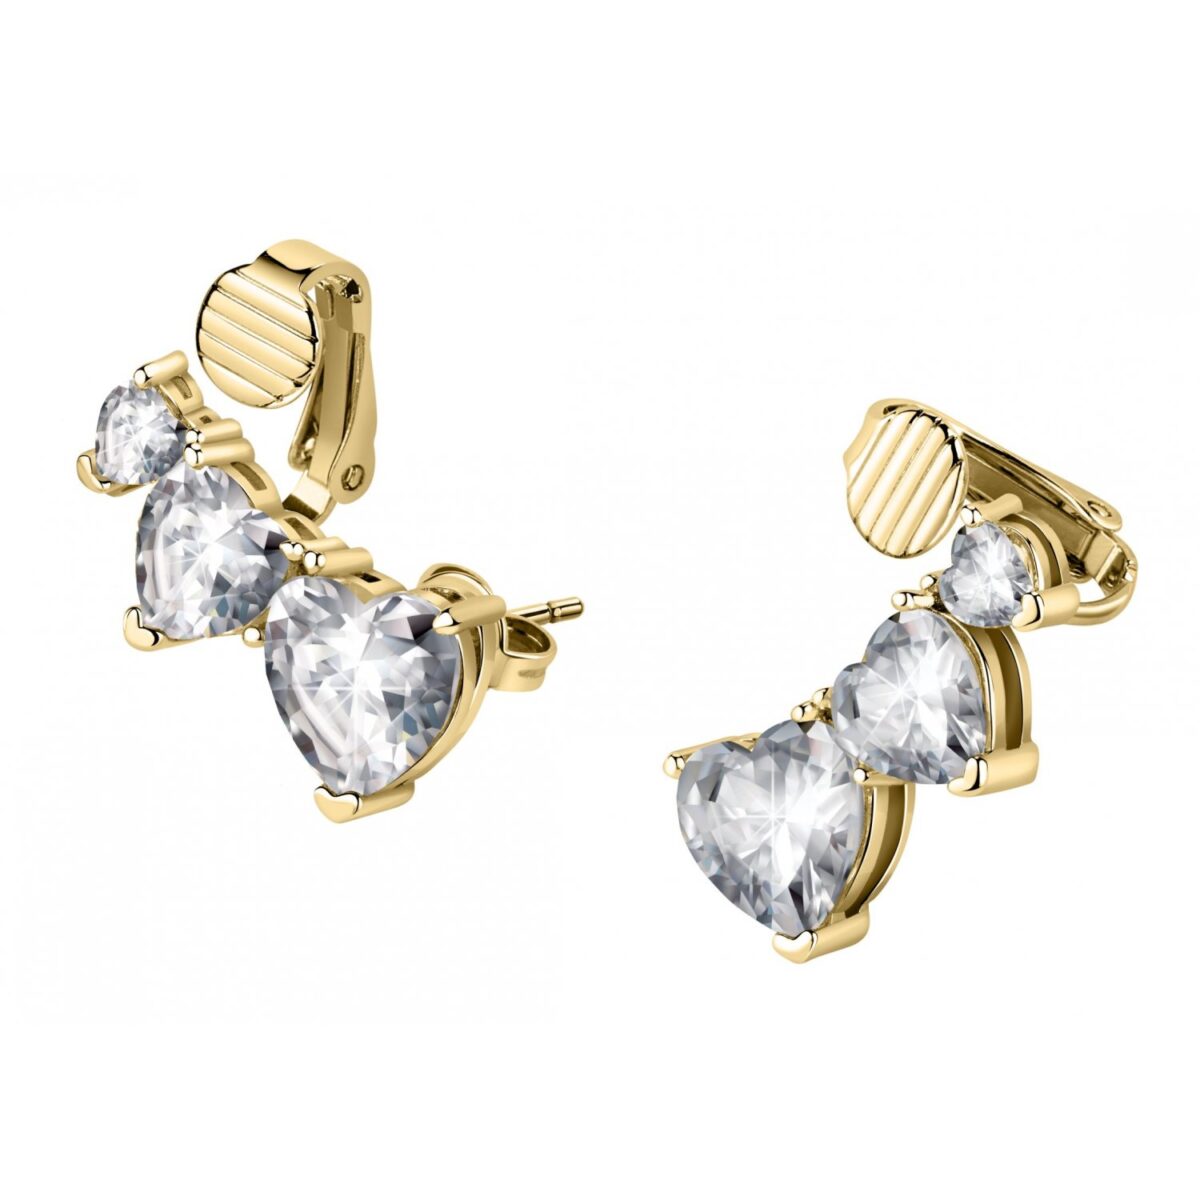 Orecchini Donna Chiara Ferragni Brand Diamond Heart Gold Semipendenti